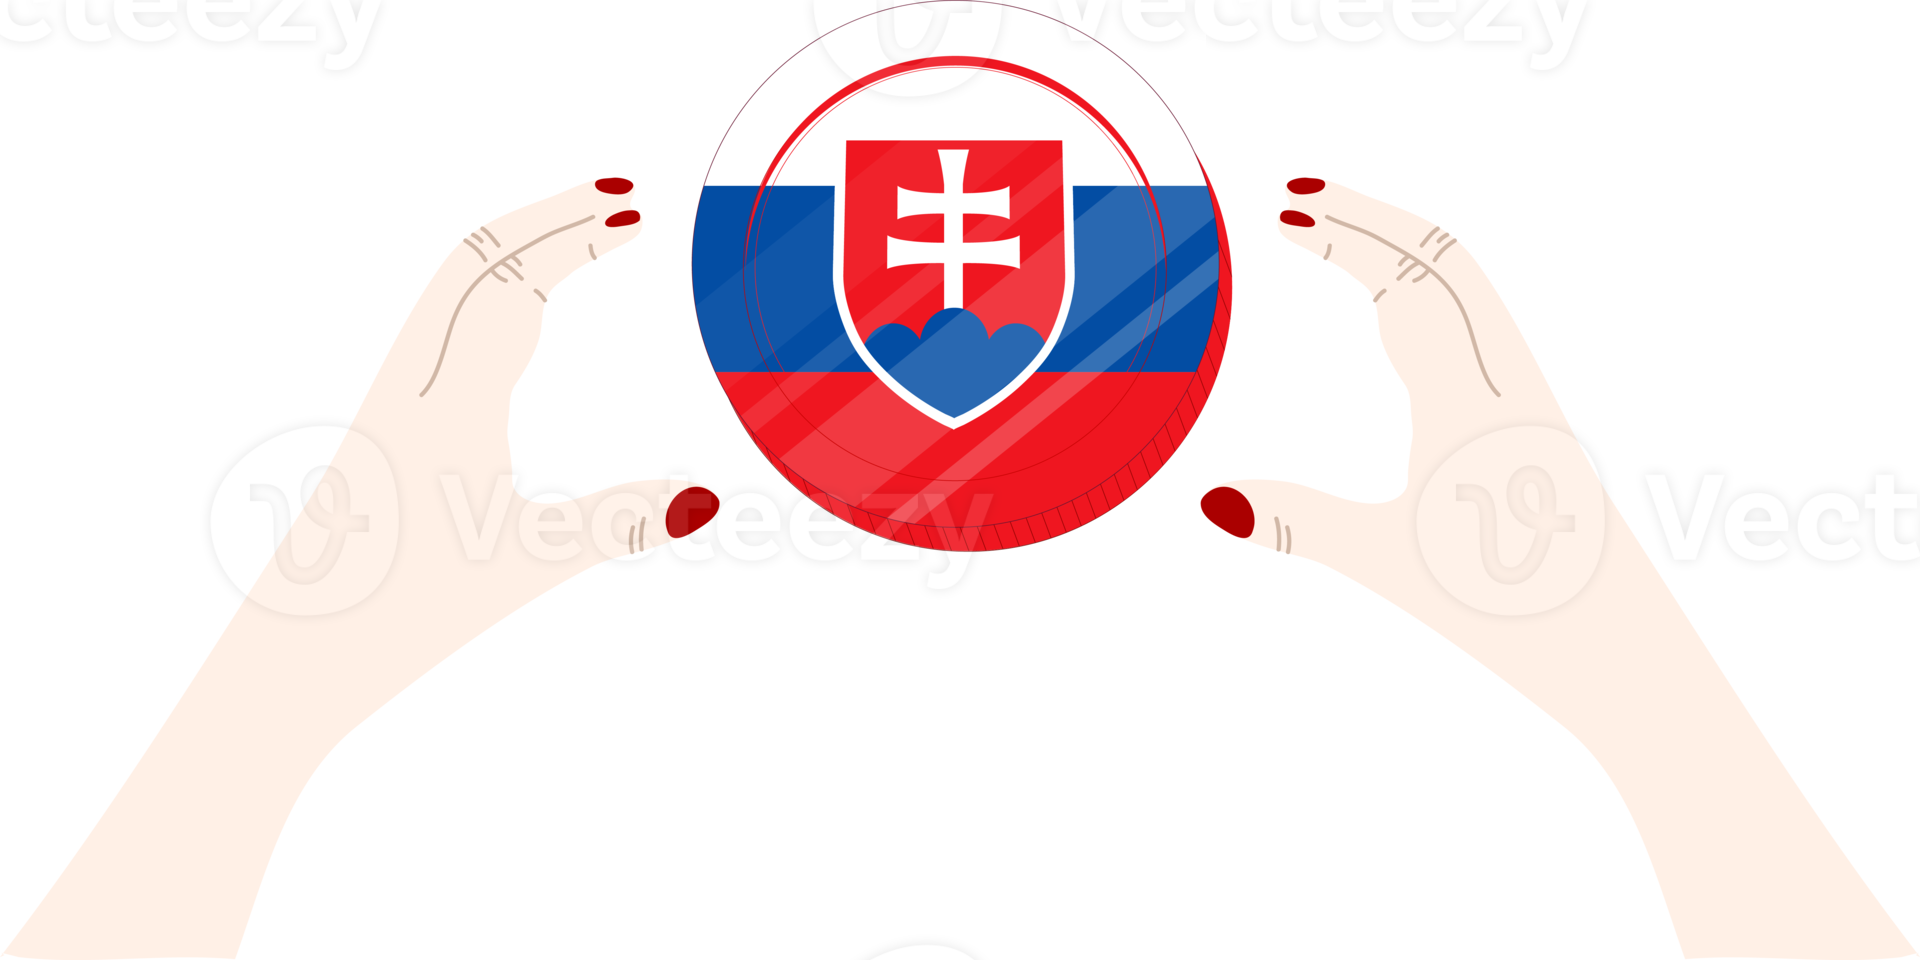 bandeira desenhada à mão da eslováquia, coroa eslovaca desenhada à mão png